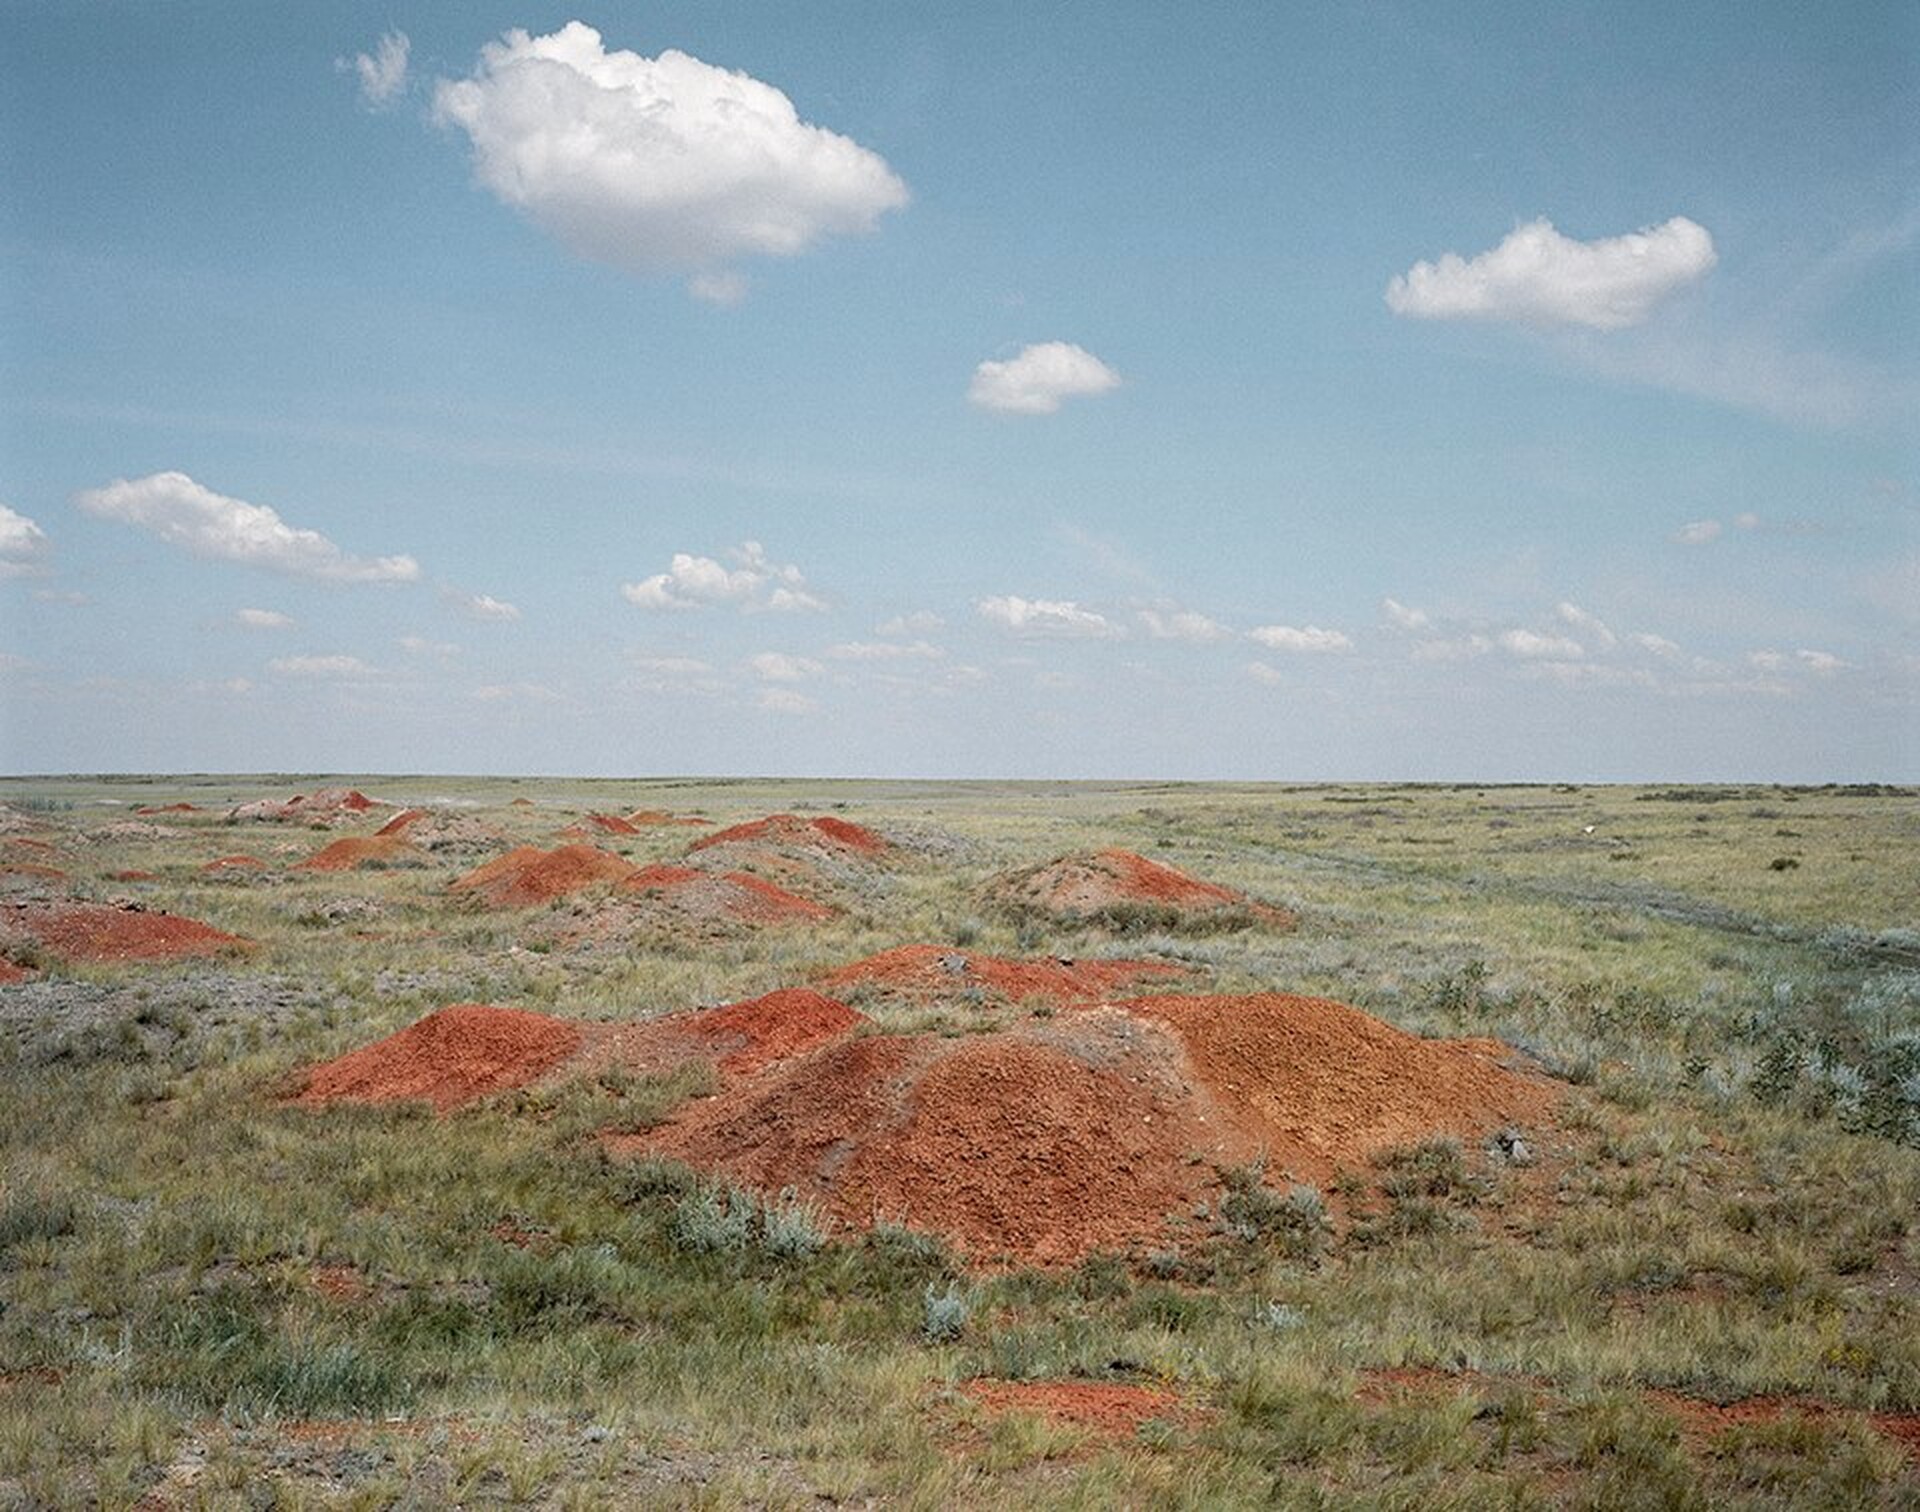  Fotografia Agnieszki Rayss z cyklu Ostatnia rozmowa z akademikiem Sacharowem. Zdjęcie przedstawia fragment krajobrazu. Na polu zarośniętym trawą znajdują się kopce rudej ziemi o niejasnym pochodzeniu. 